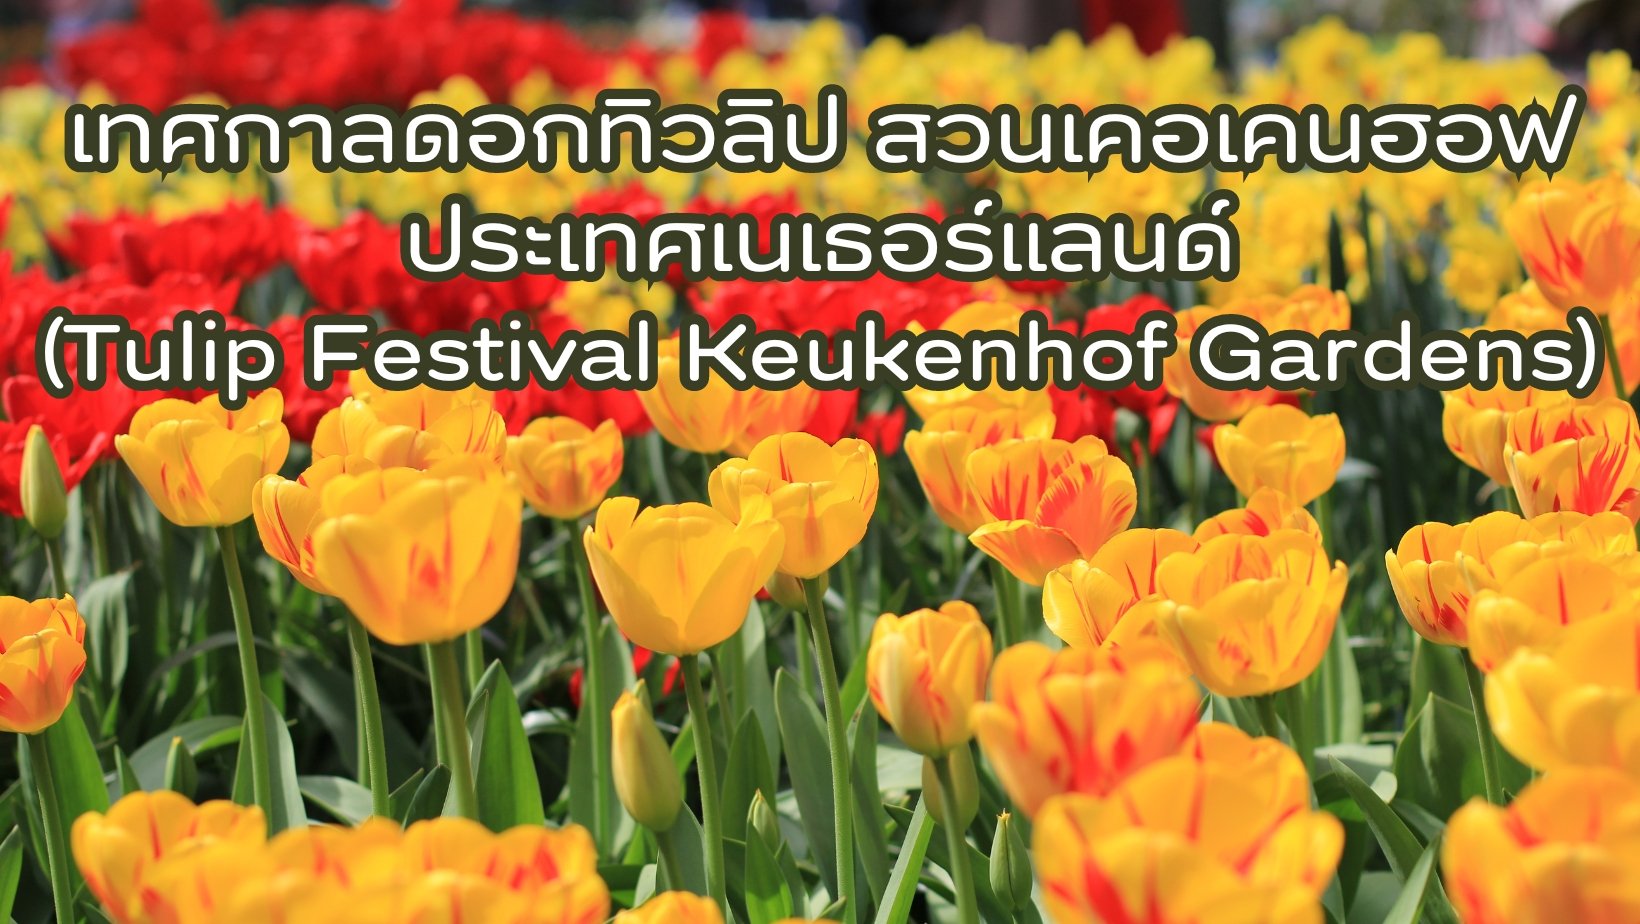 Tulip Festival Keukenhof Gardens